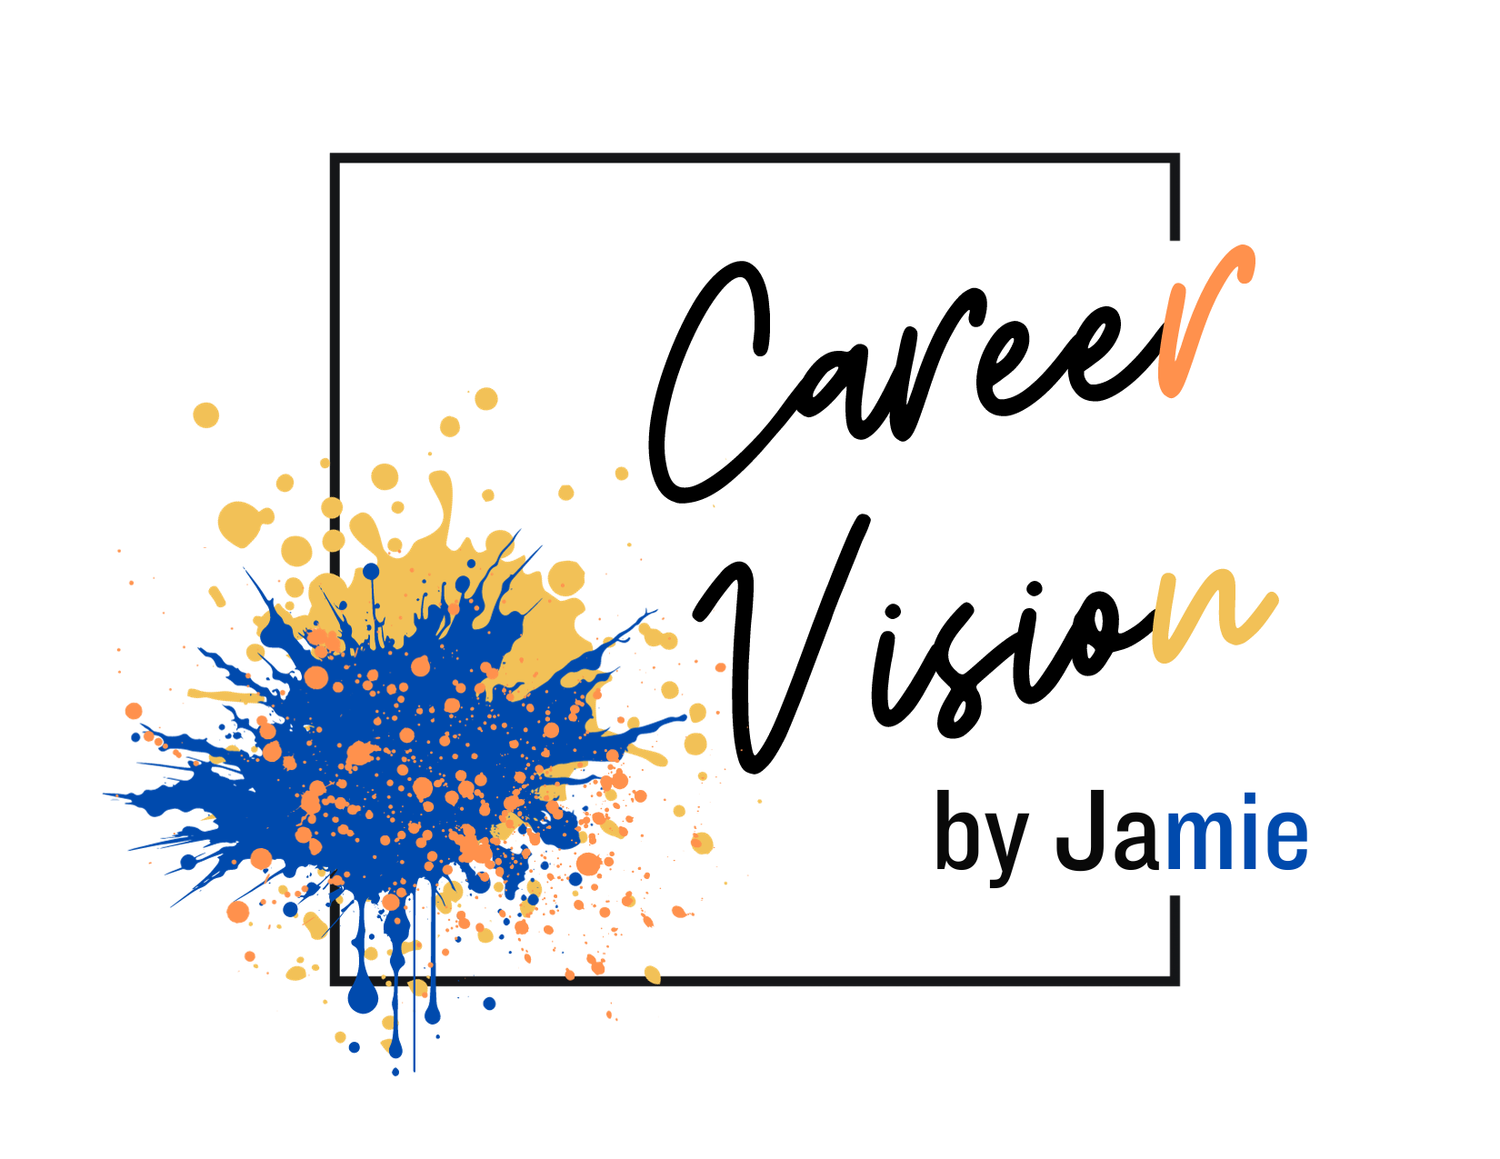 Career Vision by Jamie